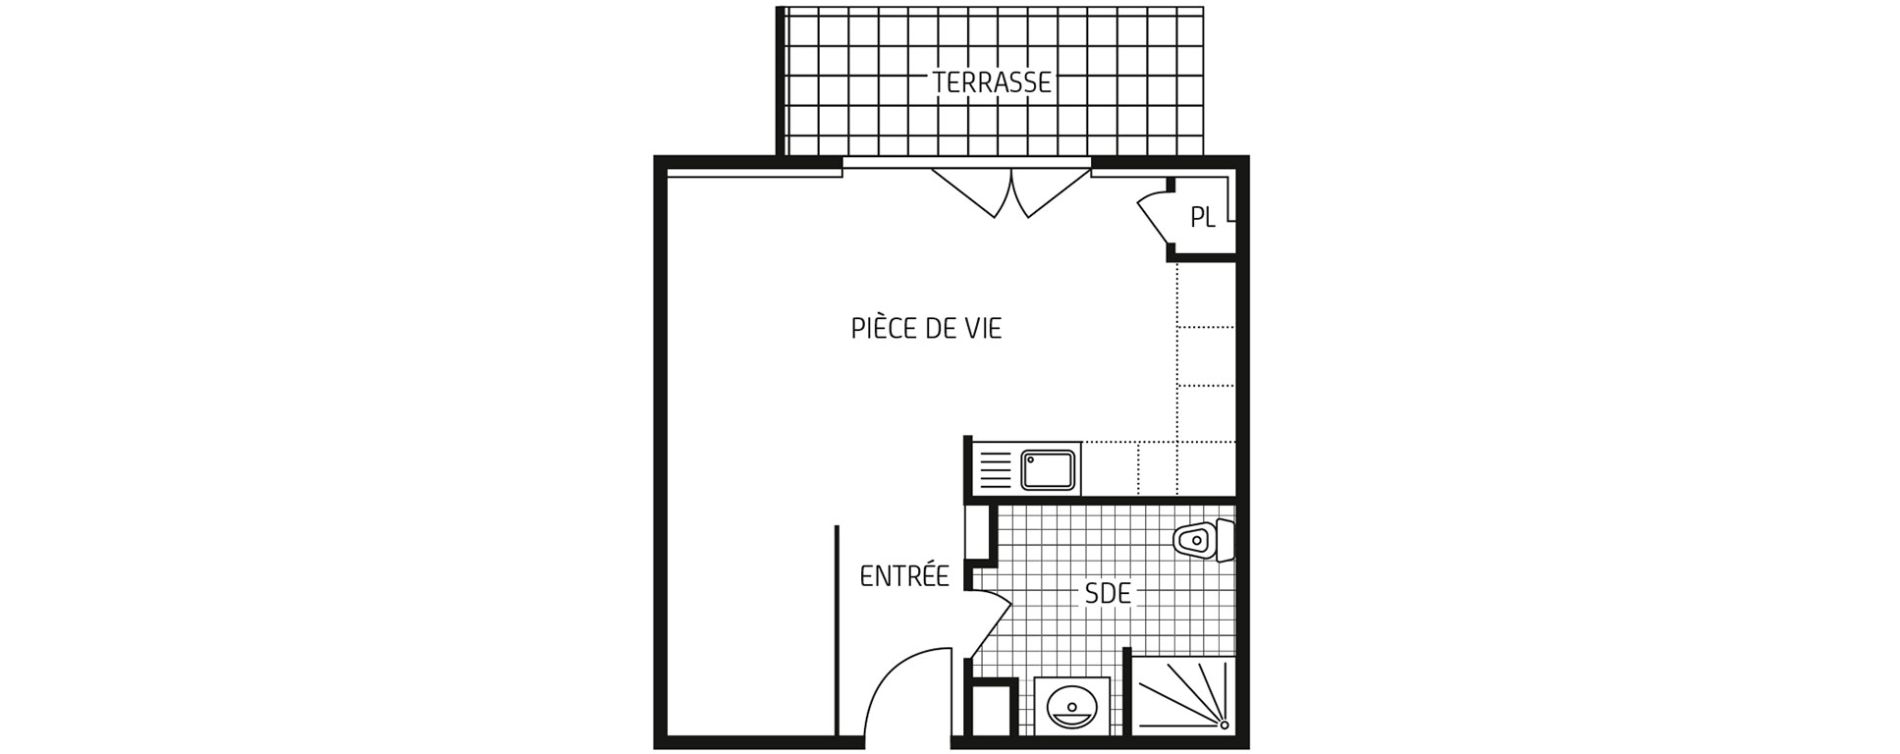 plan appartement 1 pièce 45m2